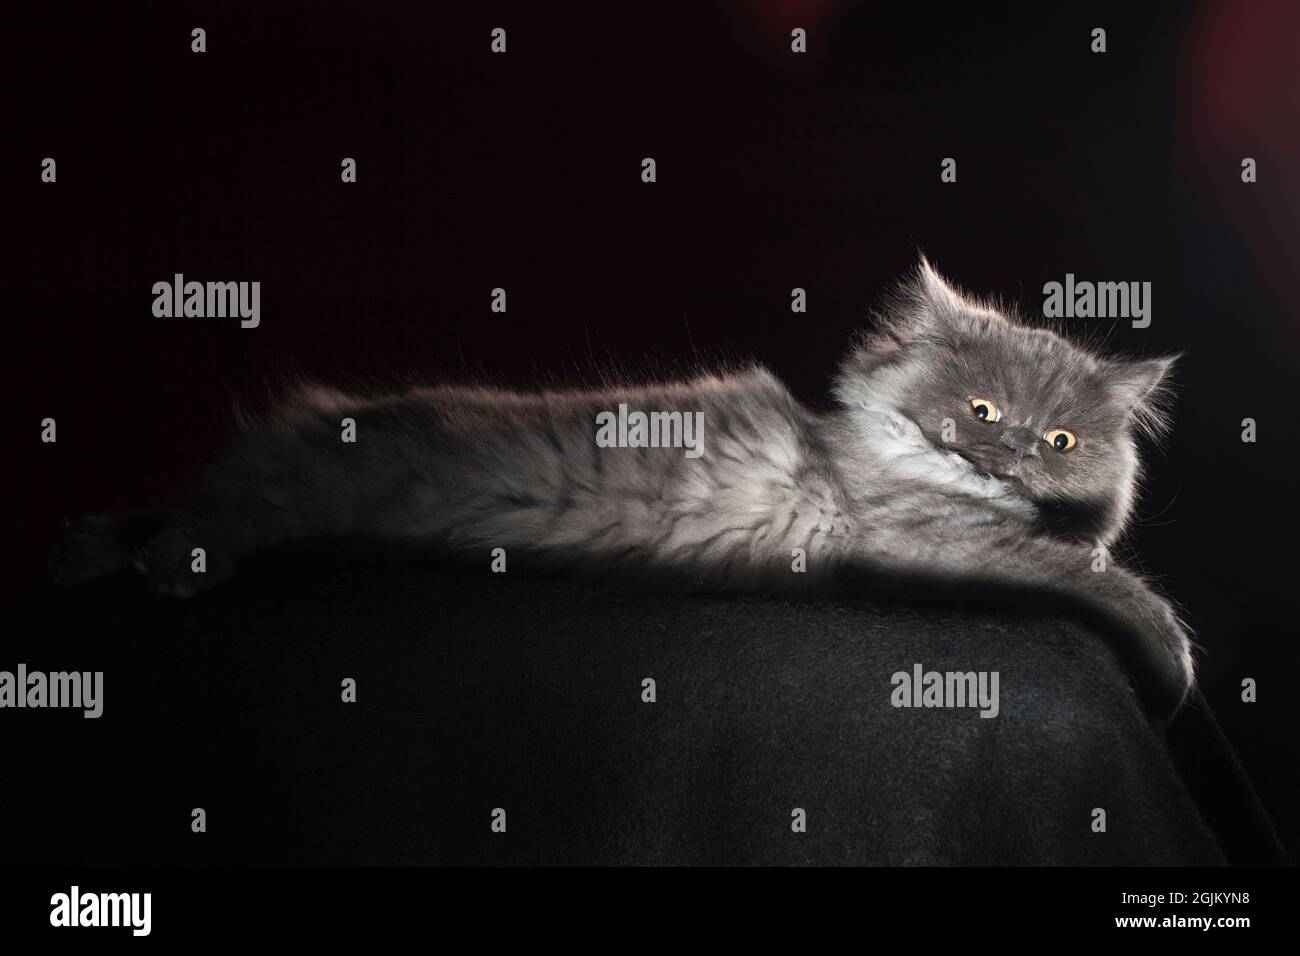 Urkomisch wütend aussehende flauschige graue langhaarige Katze. Stockfoto